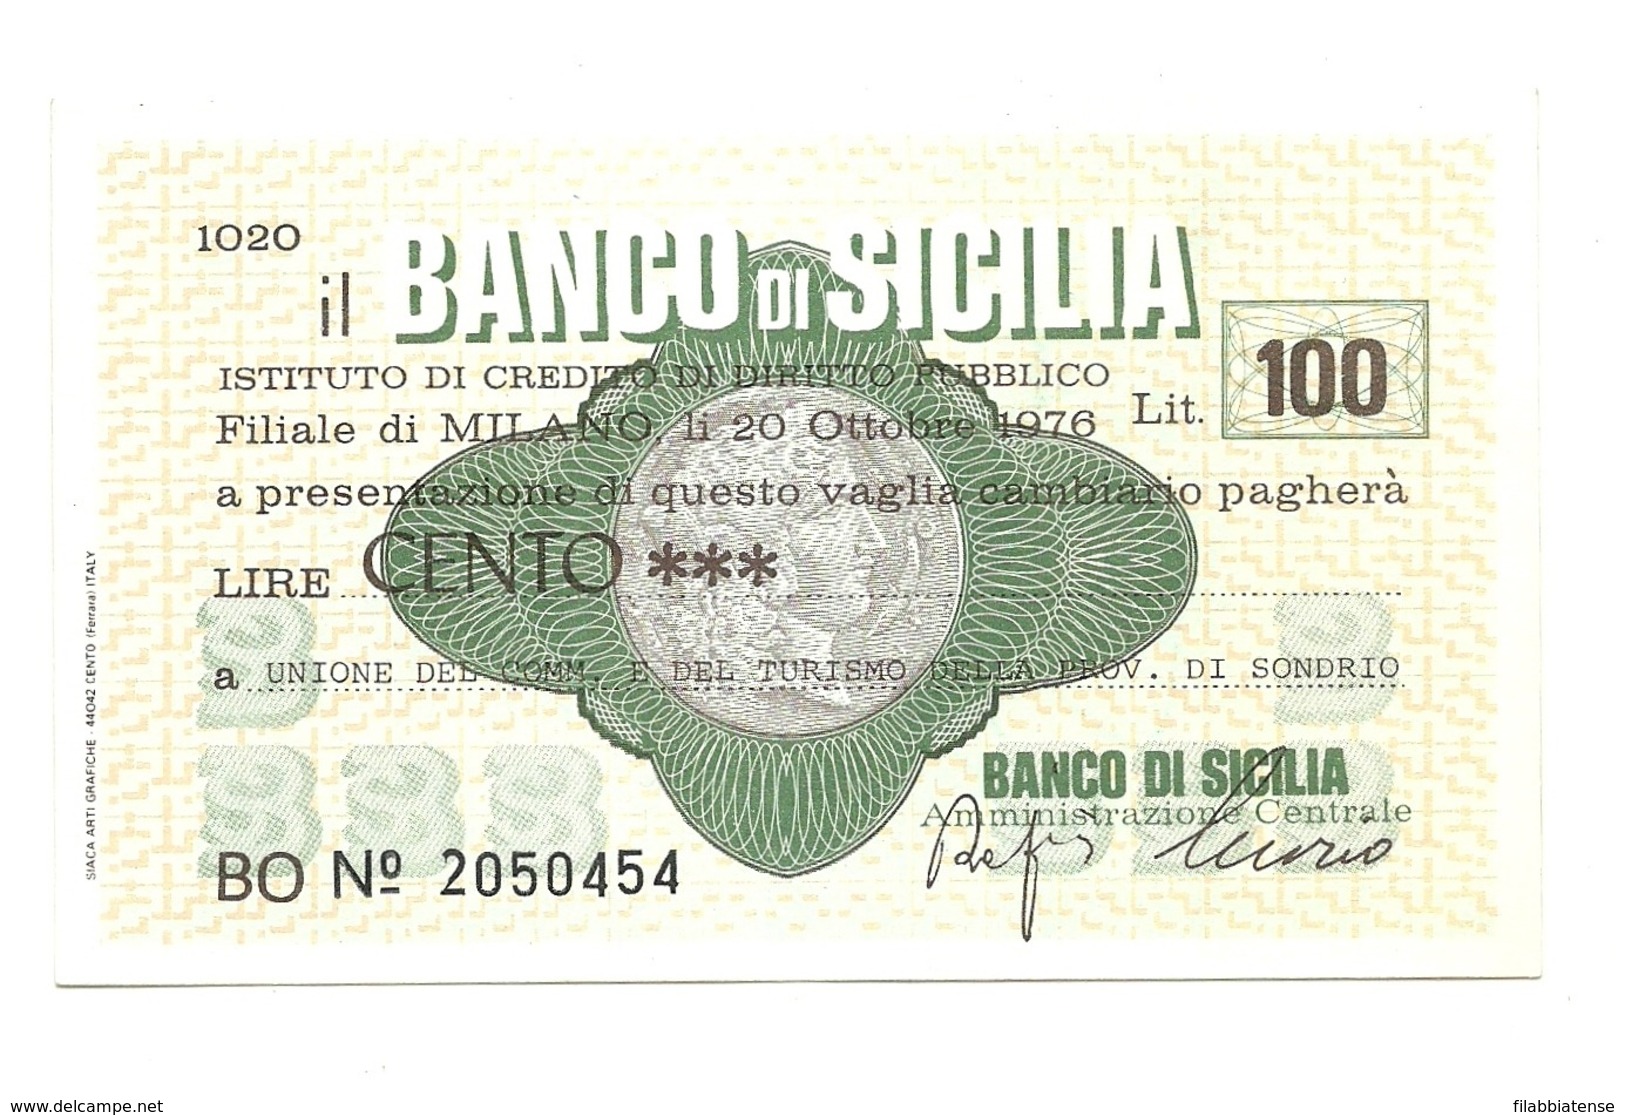 1976 - Italia - Banco Di Sicilia - Unione Del Commercio E Del Turismo Della Provincia Di Sondrio ---- - [10] Checks And Mini-checks